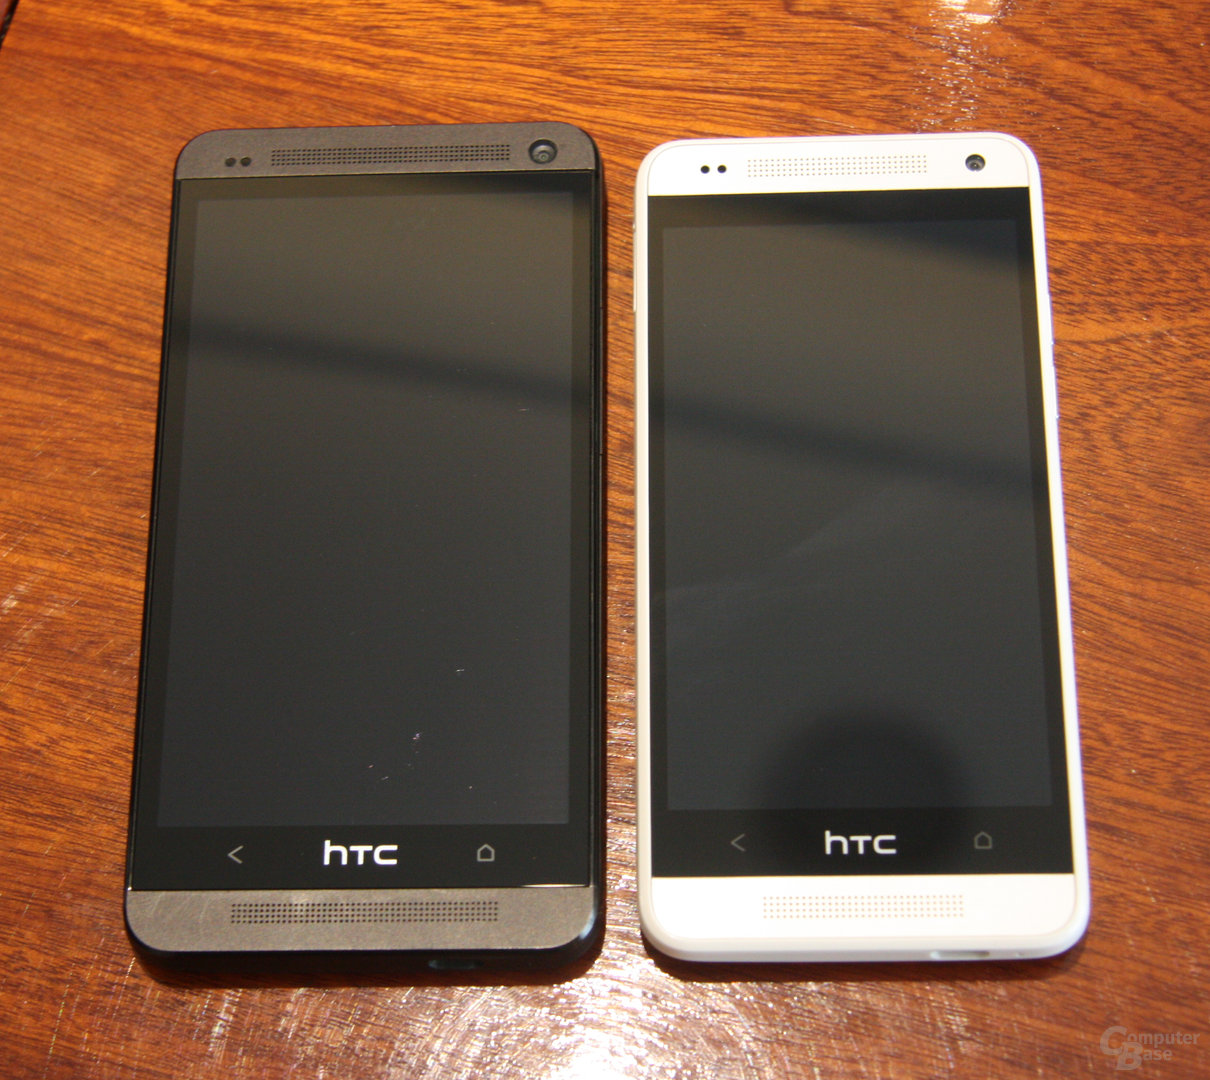 HTC One / HTC One mini